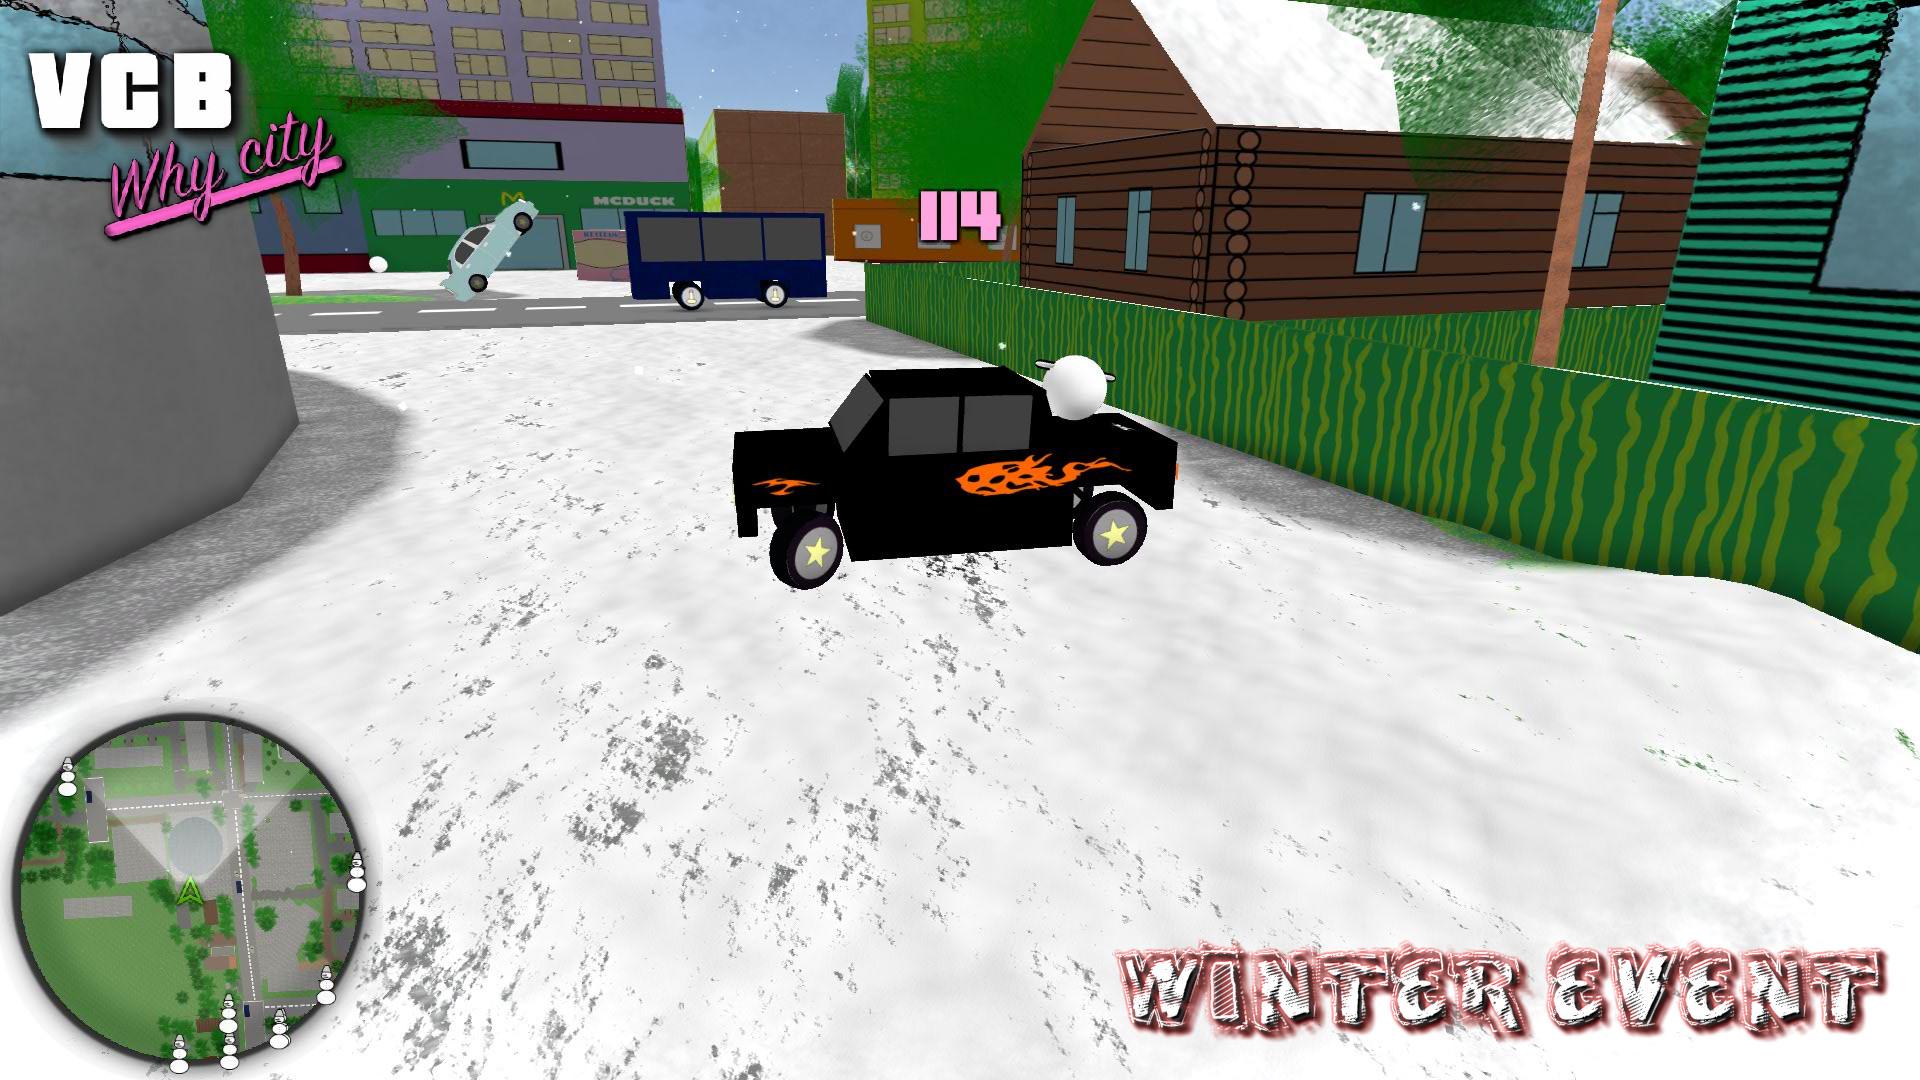 Скриншот №3 из игры VCB: Why City (Beta Version)